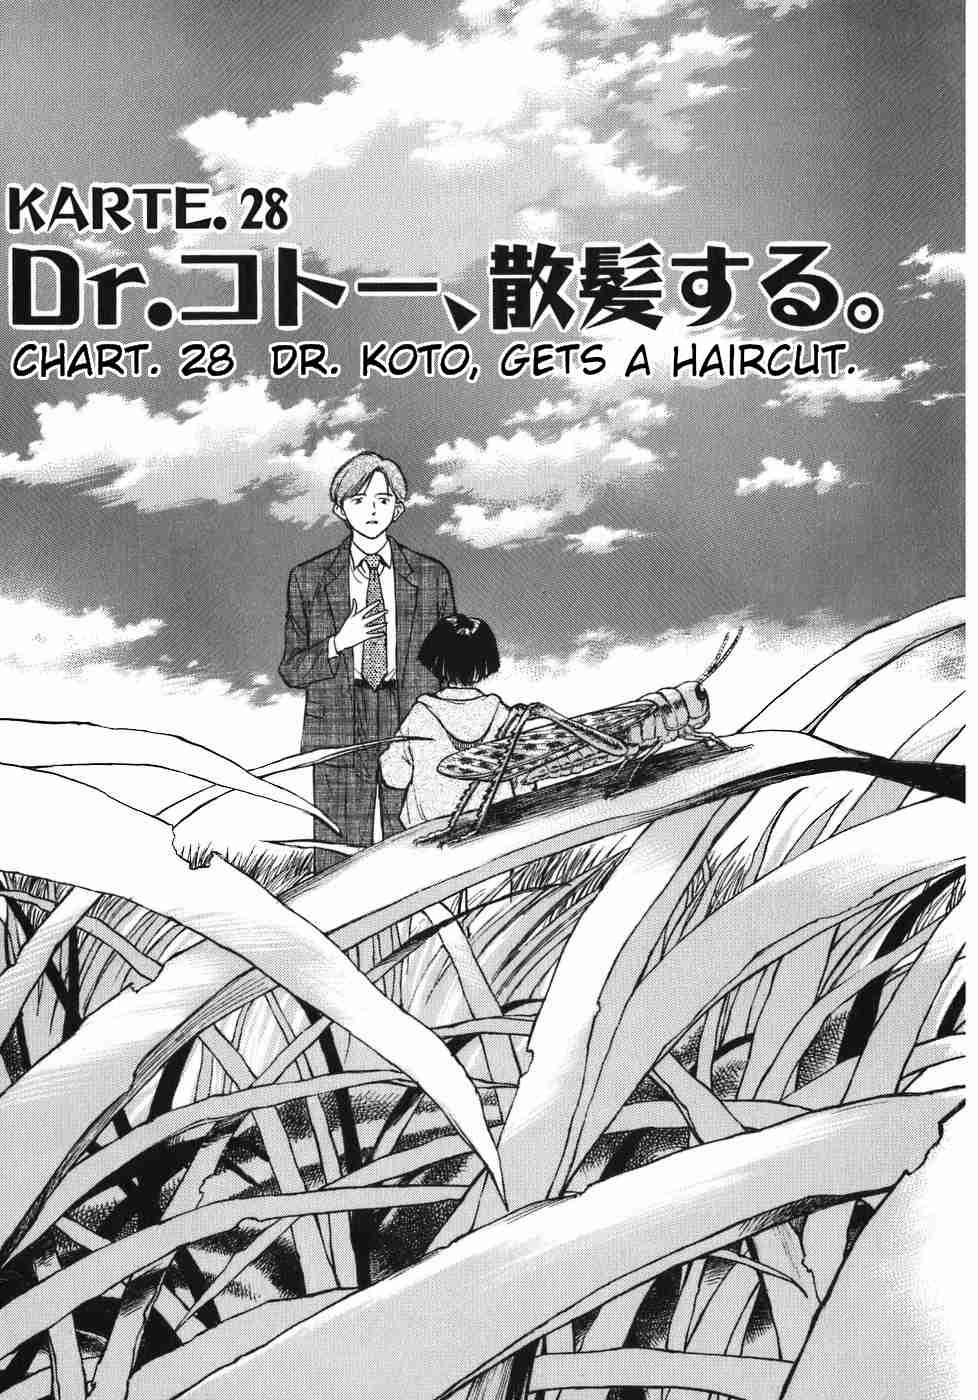 Dr. Koto Shinryoujo Vol. 3 Ch. 28 Dr. Koto Gets a Haircut